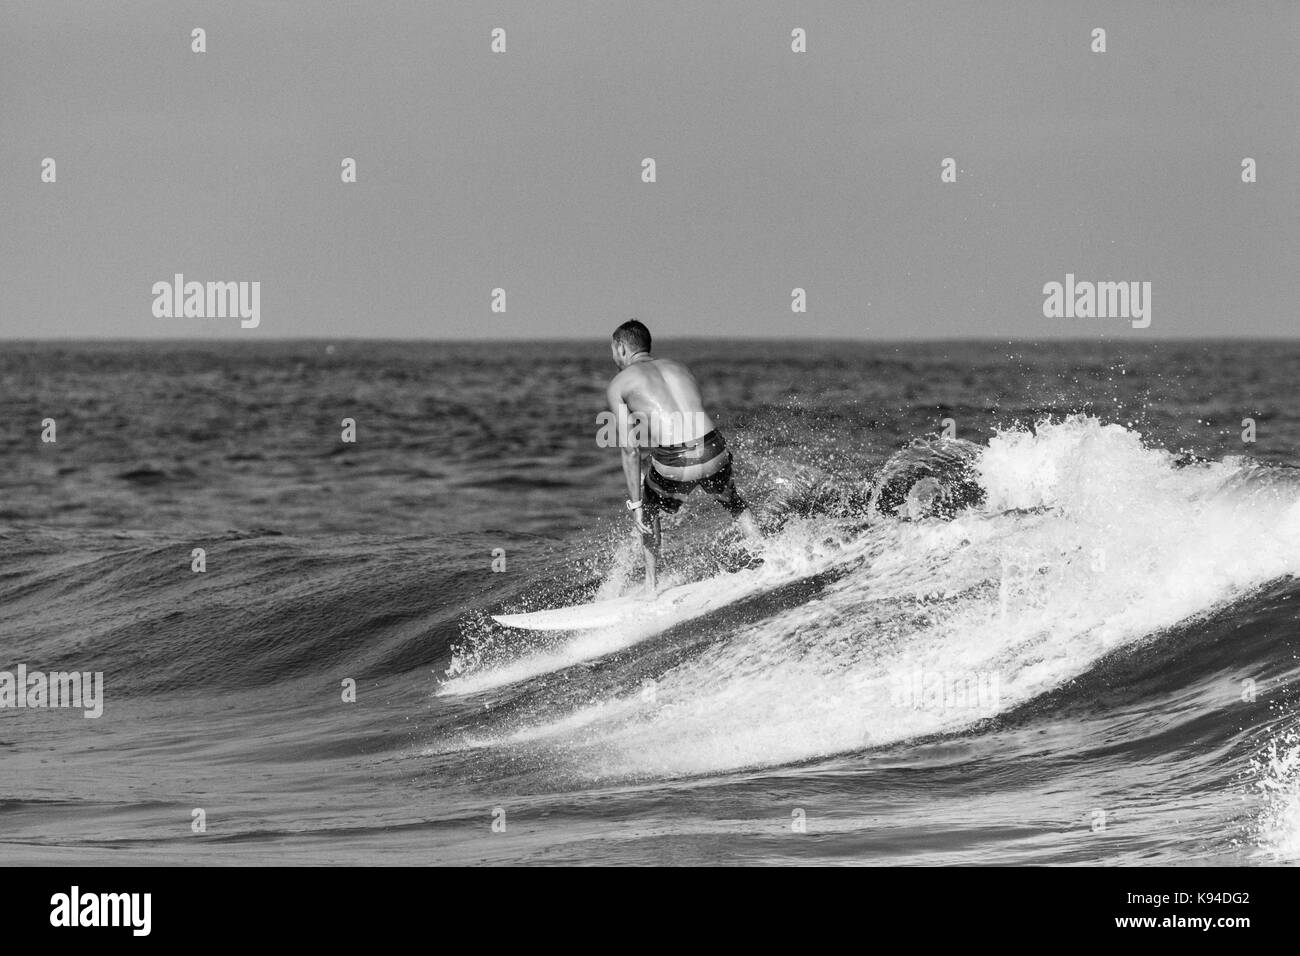 Deal, Nueva Jersey - 16 de septiembre de 2017: los surfistas disfrutar del surf surf irregular creada por la tormenta tropical José Foto de stock